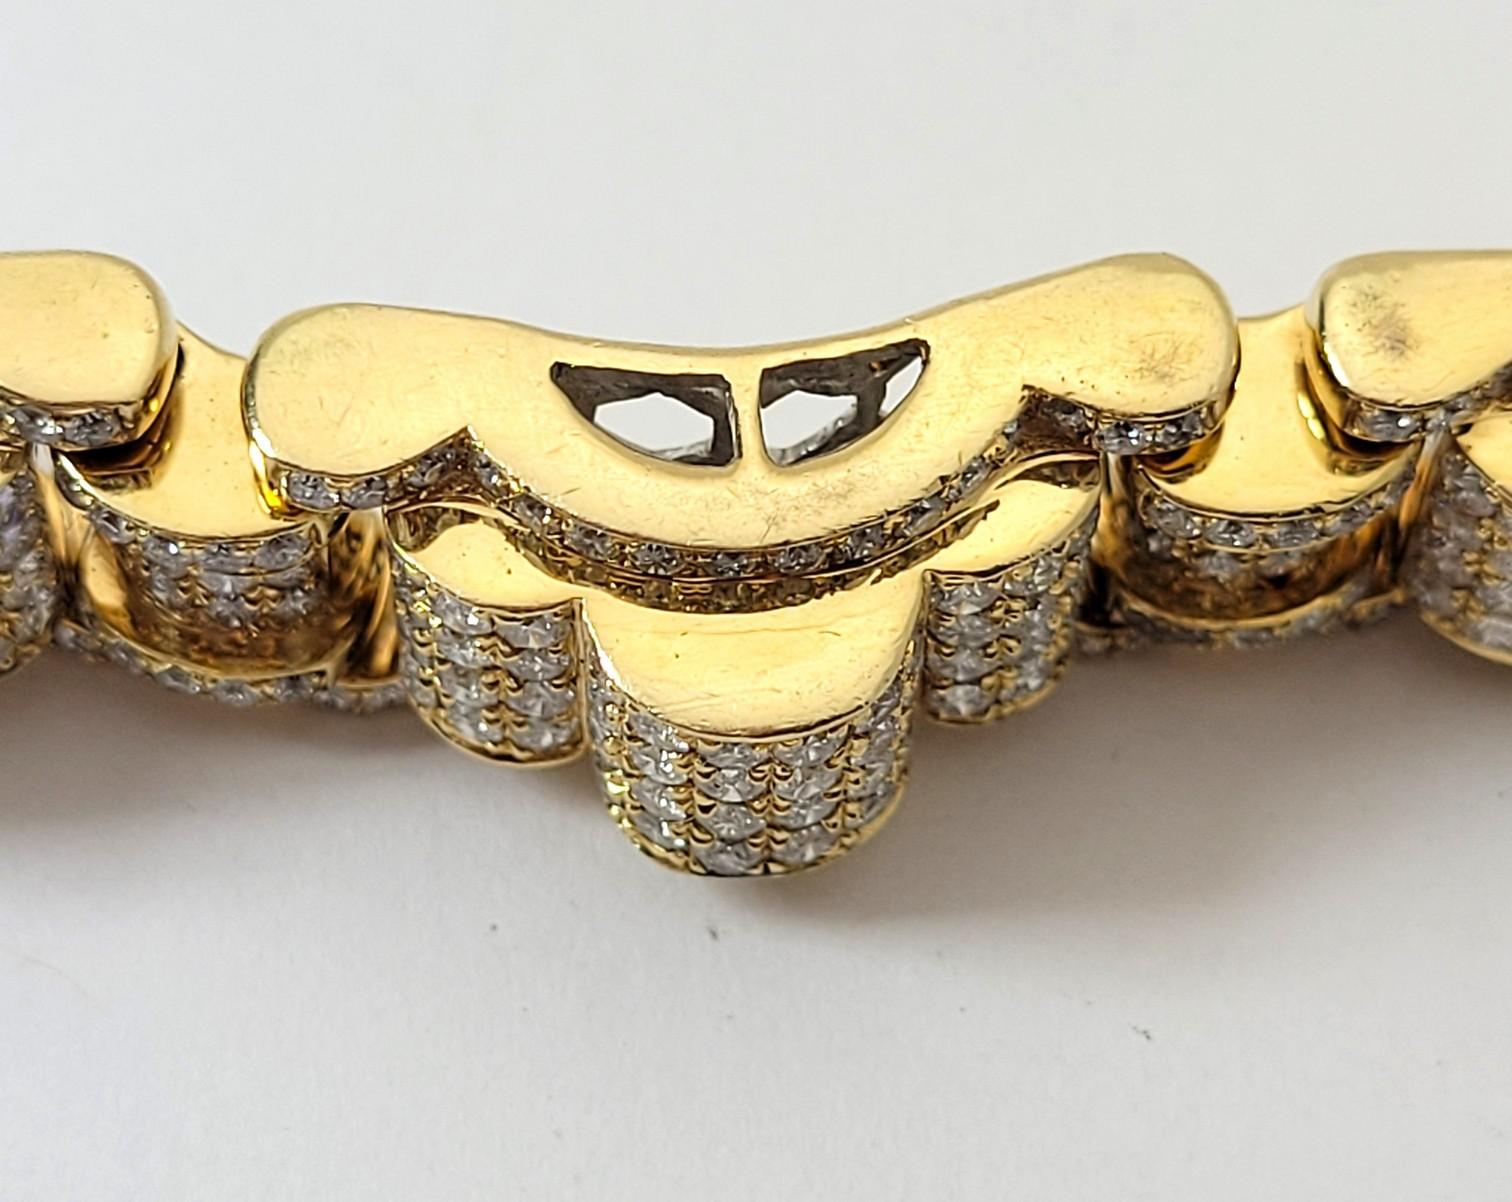 Mens Diamond 14k Yellow Gold Paved Diamond Bracelet